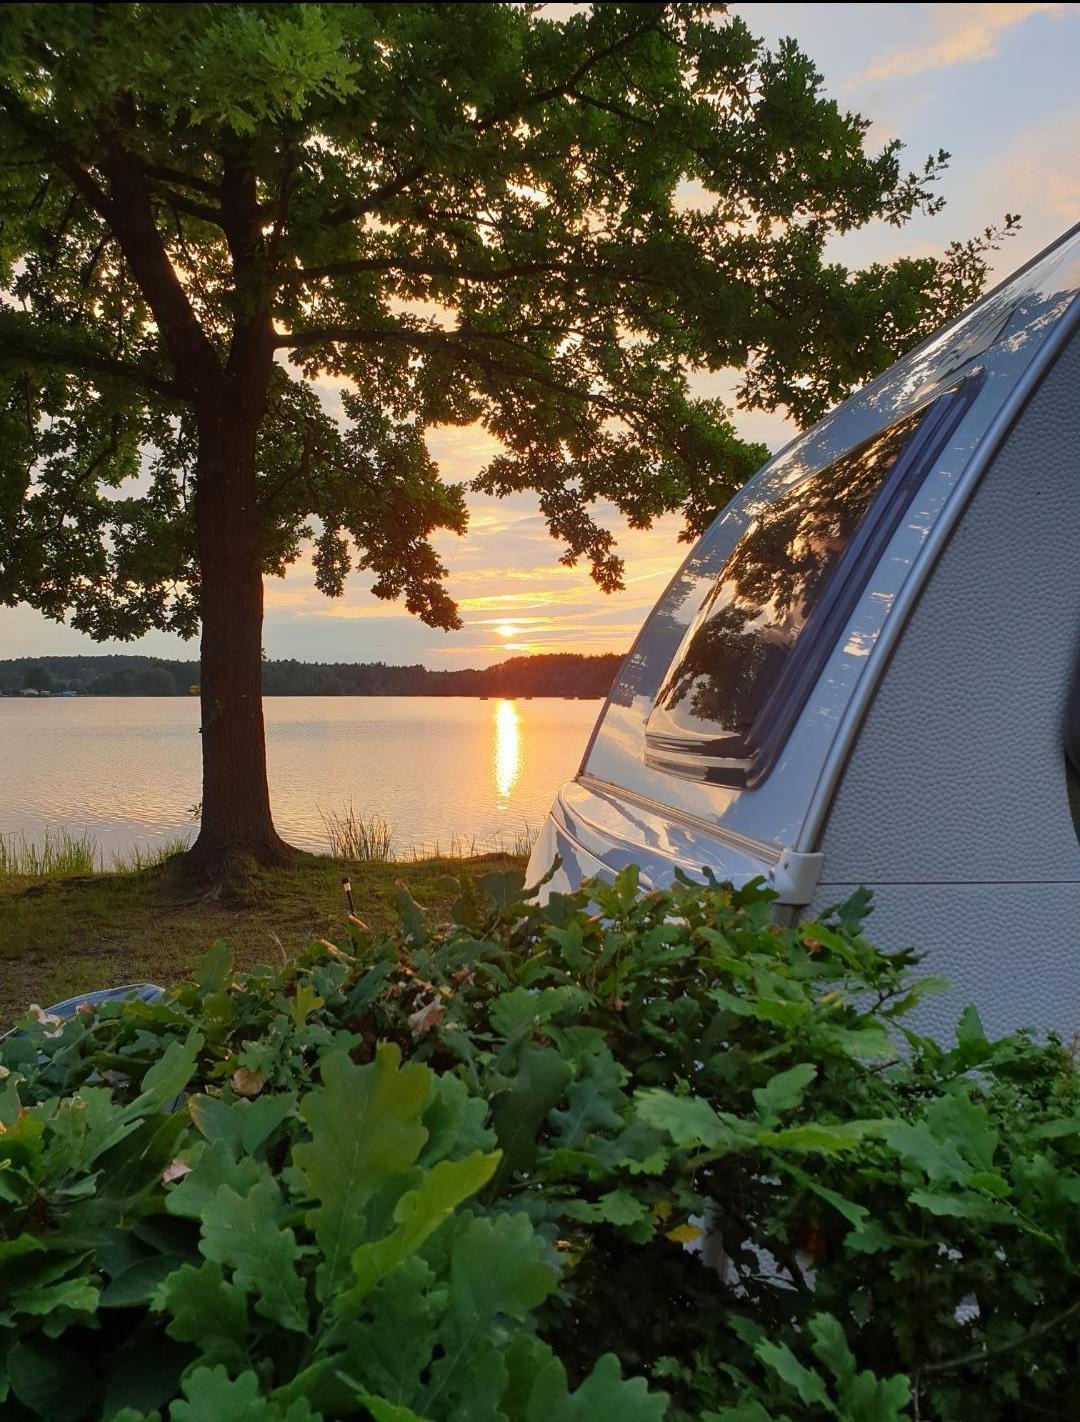 Wohnwagenheck bei Sonnenuntergang mit Blick auf den See - Camping in Bayern